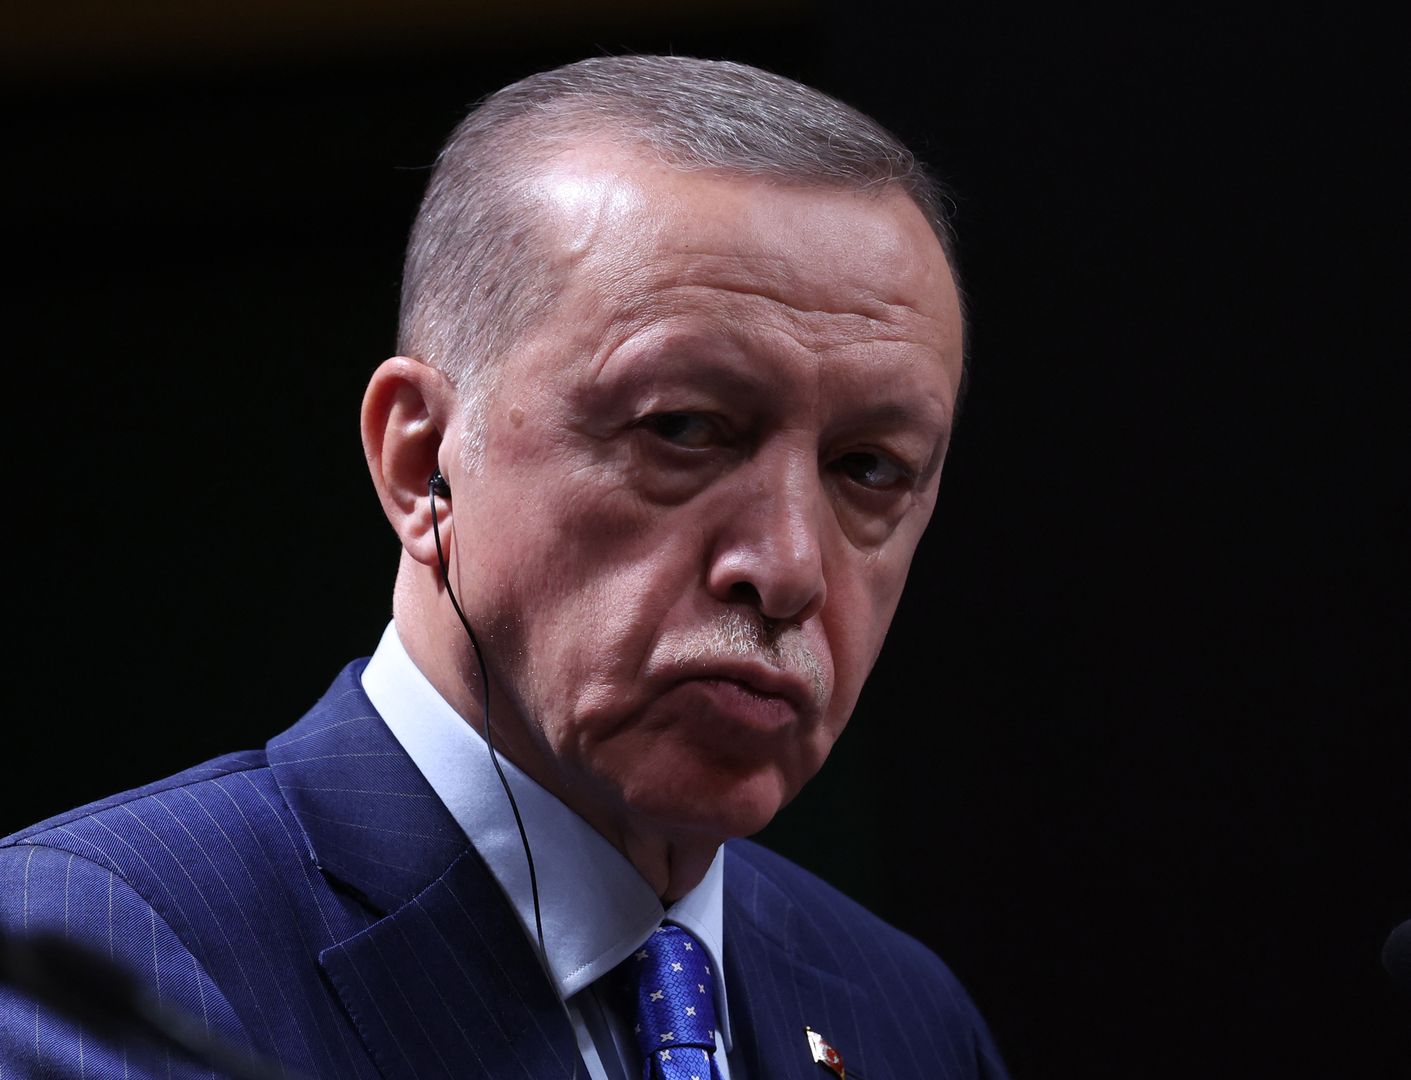 أردوغان: اكتشفنا حقلا نفطيا يعد واحدا من أكبر 10 اكتشافات نفطية في البر حول العالم خلال 2022